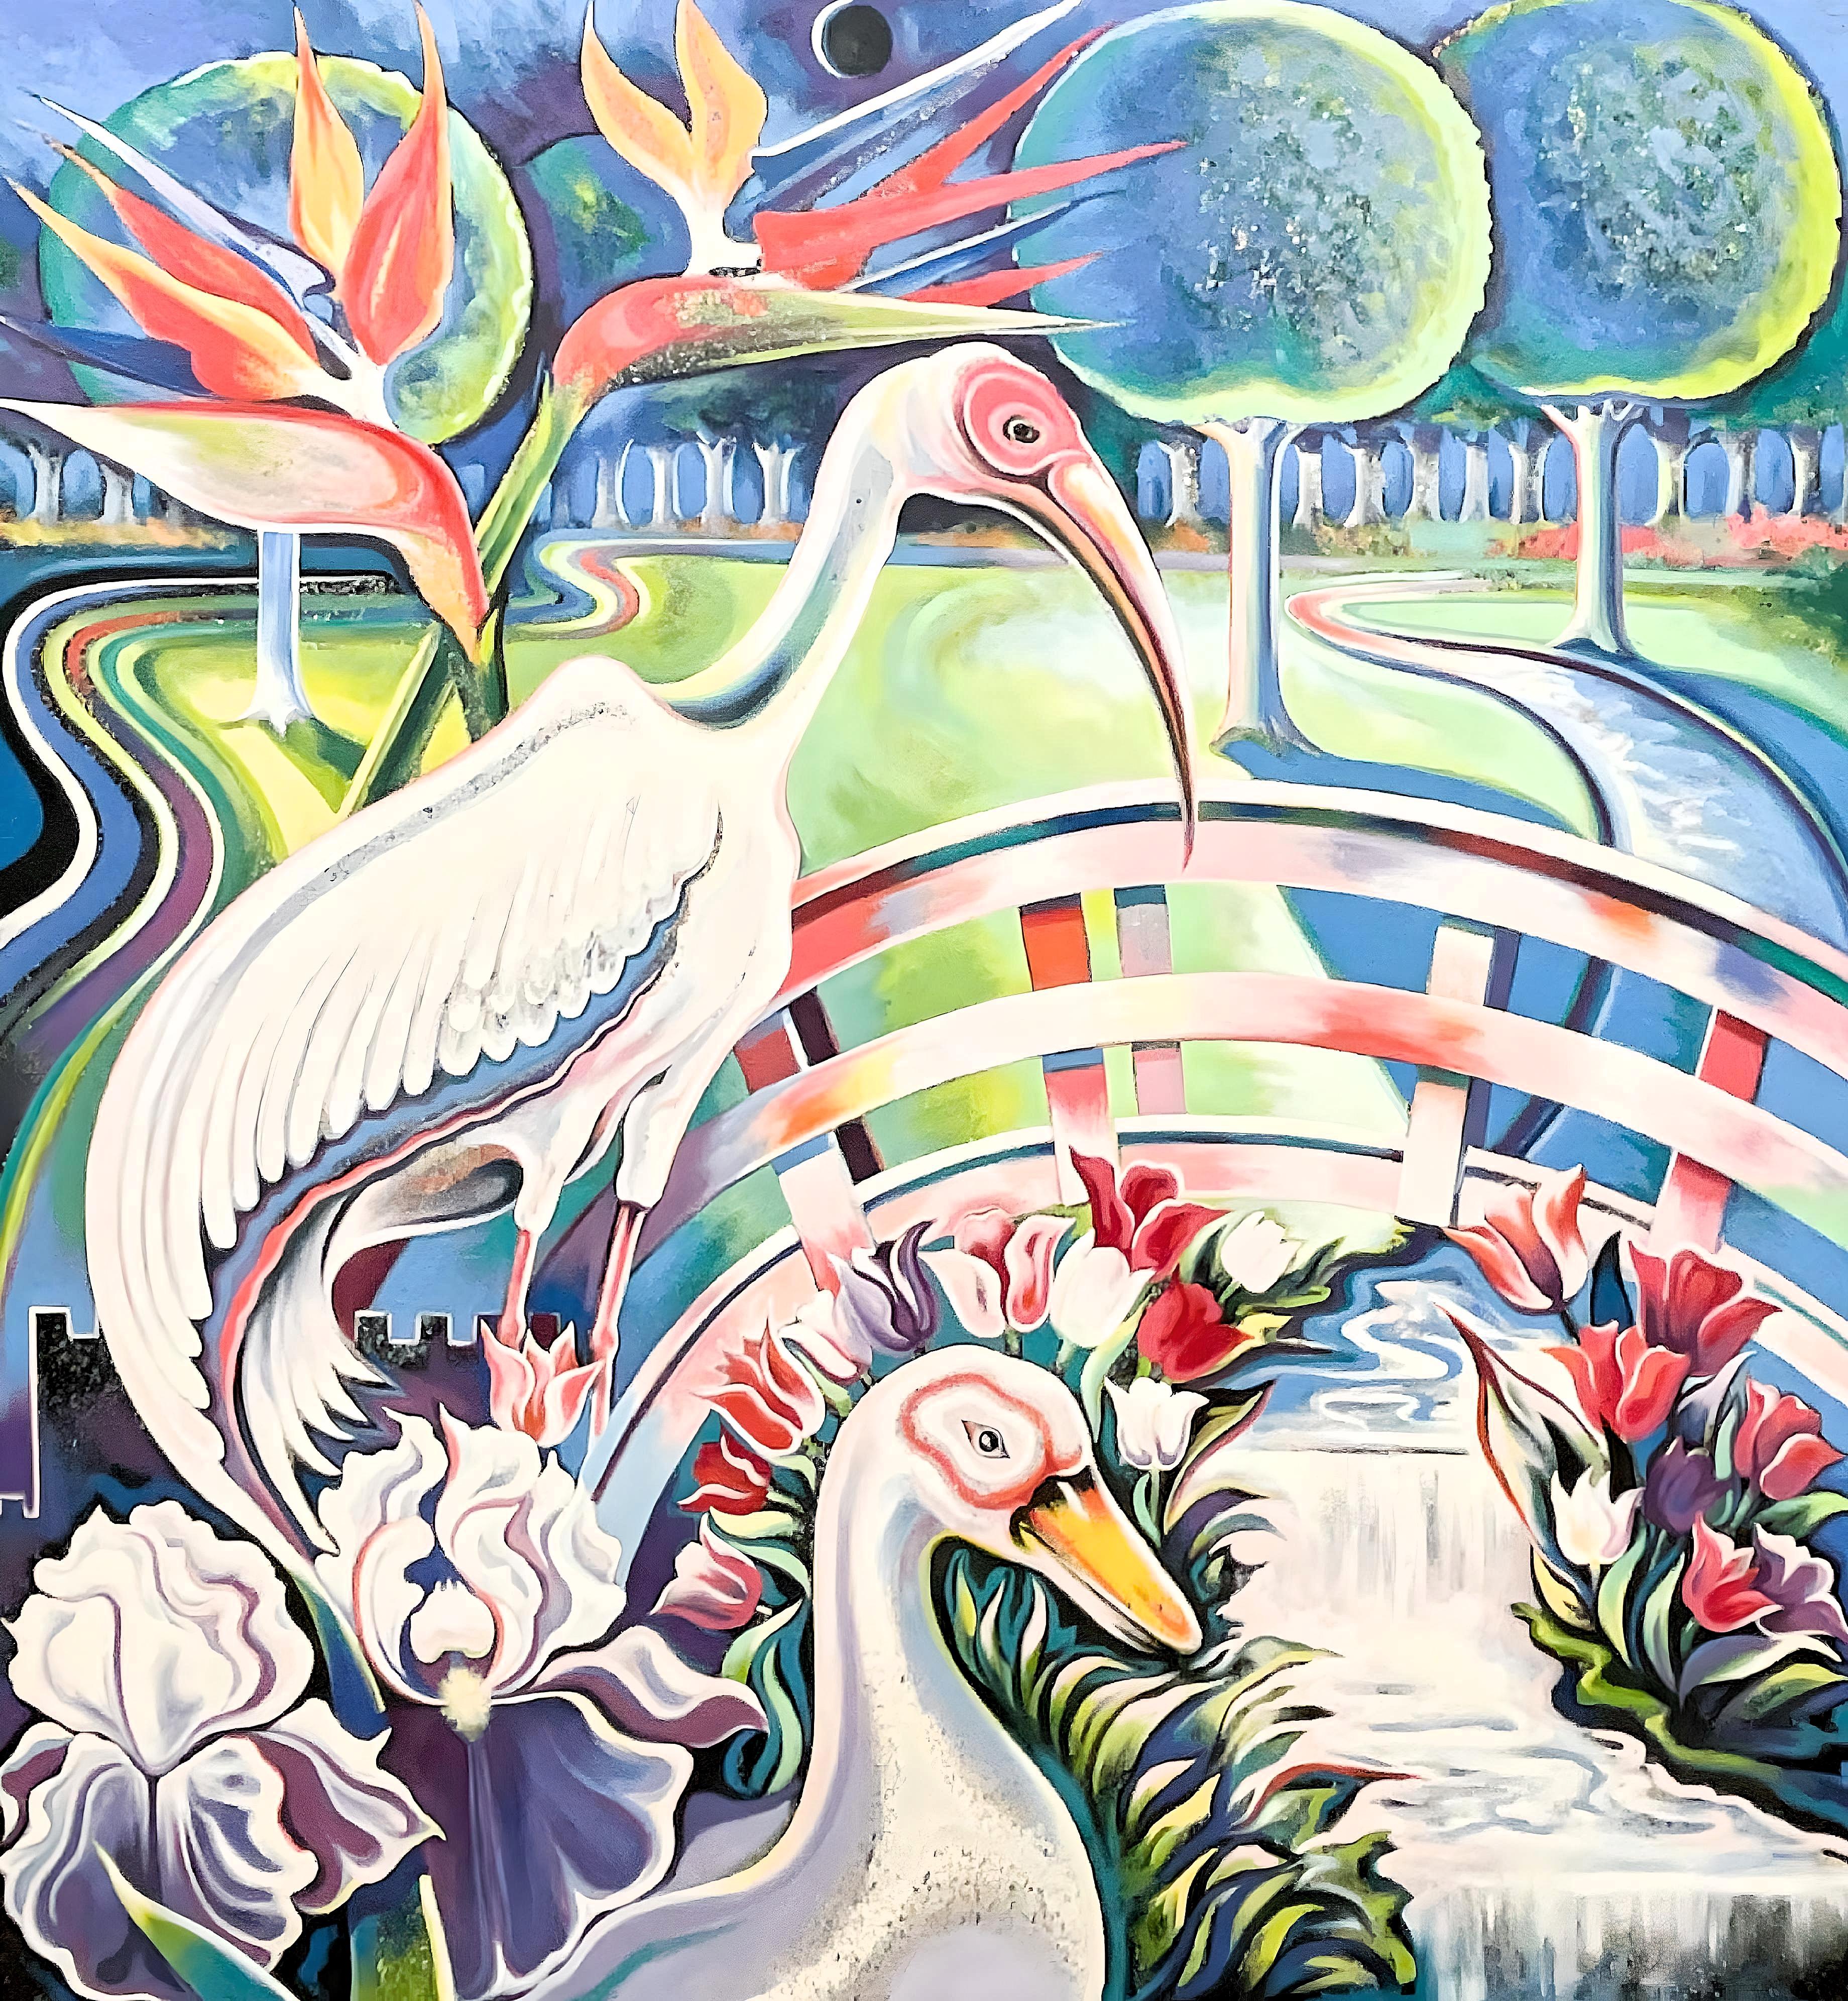 Künstler: Lowell Nesbitt (1933-1993)
Titel: Paradiesvögel
Jahr: 1986
Medium: Öl auf Leinen
Größe: 80 x 73 Zoll
Zustand: Ausgezeichnet
Beschriftung: Signiert, datiert, betitelt vom Künstler, verso

LOWELL NESBITT (1933-1993) Einer der berühmtesten